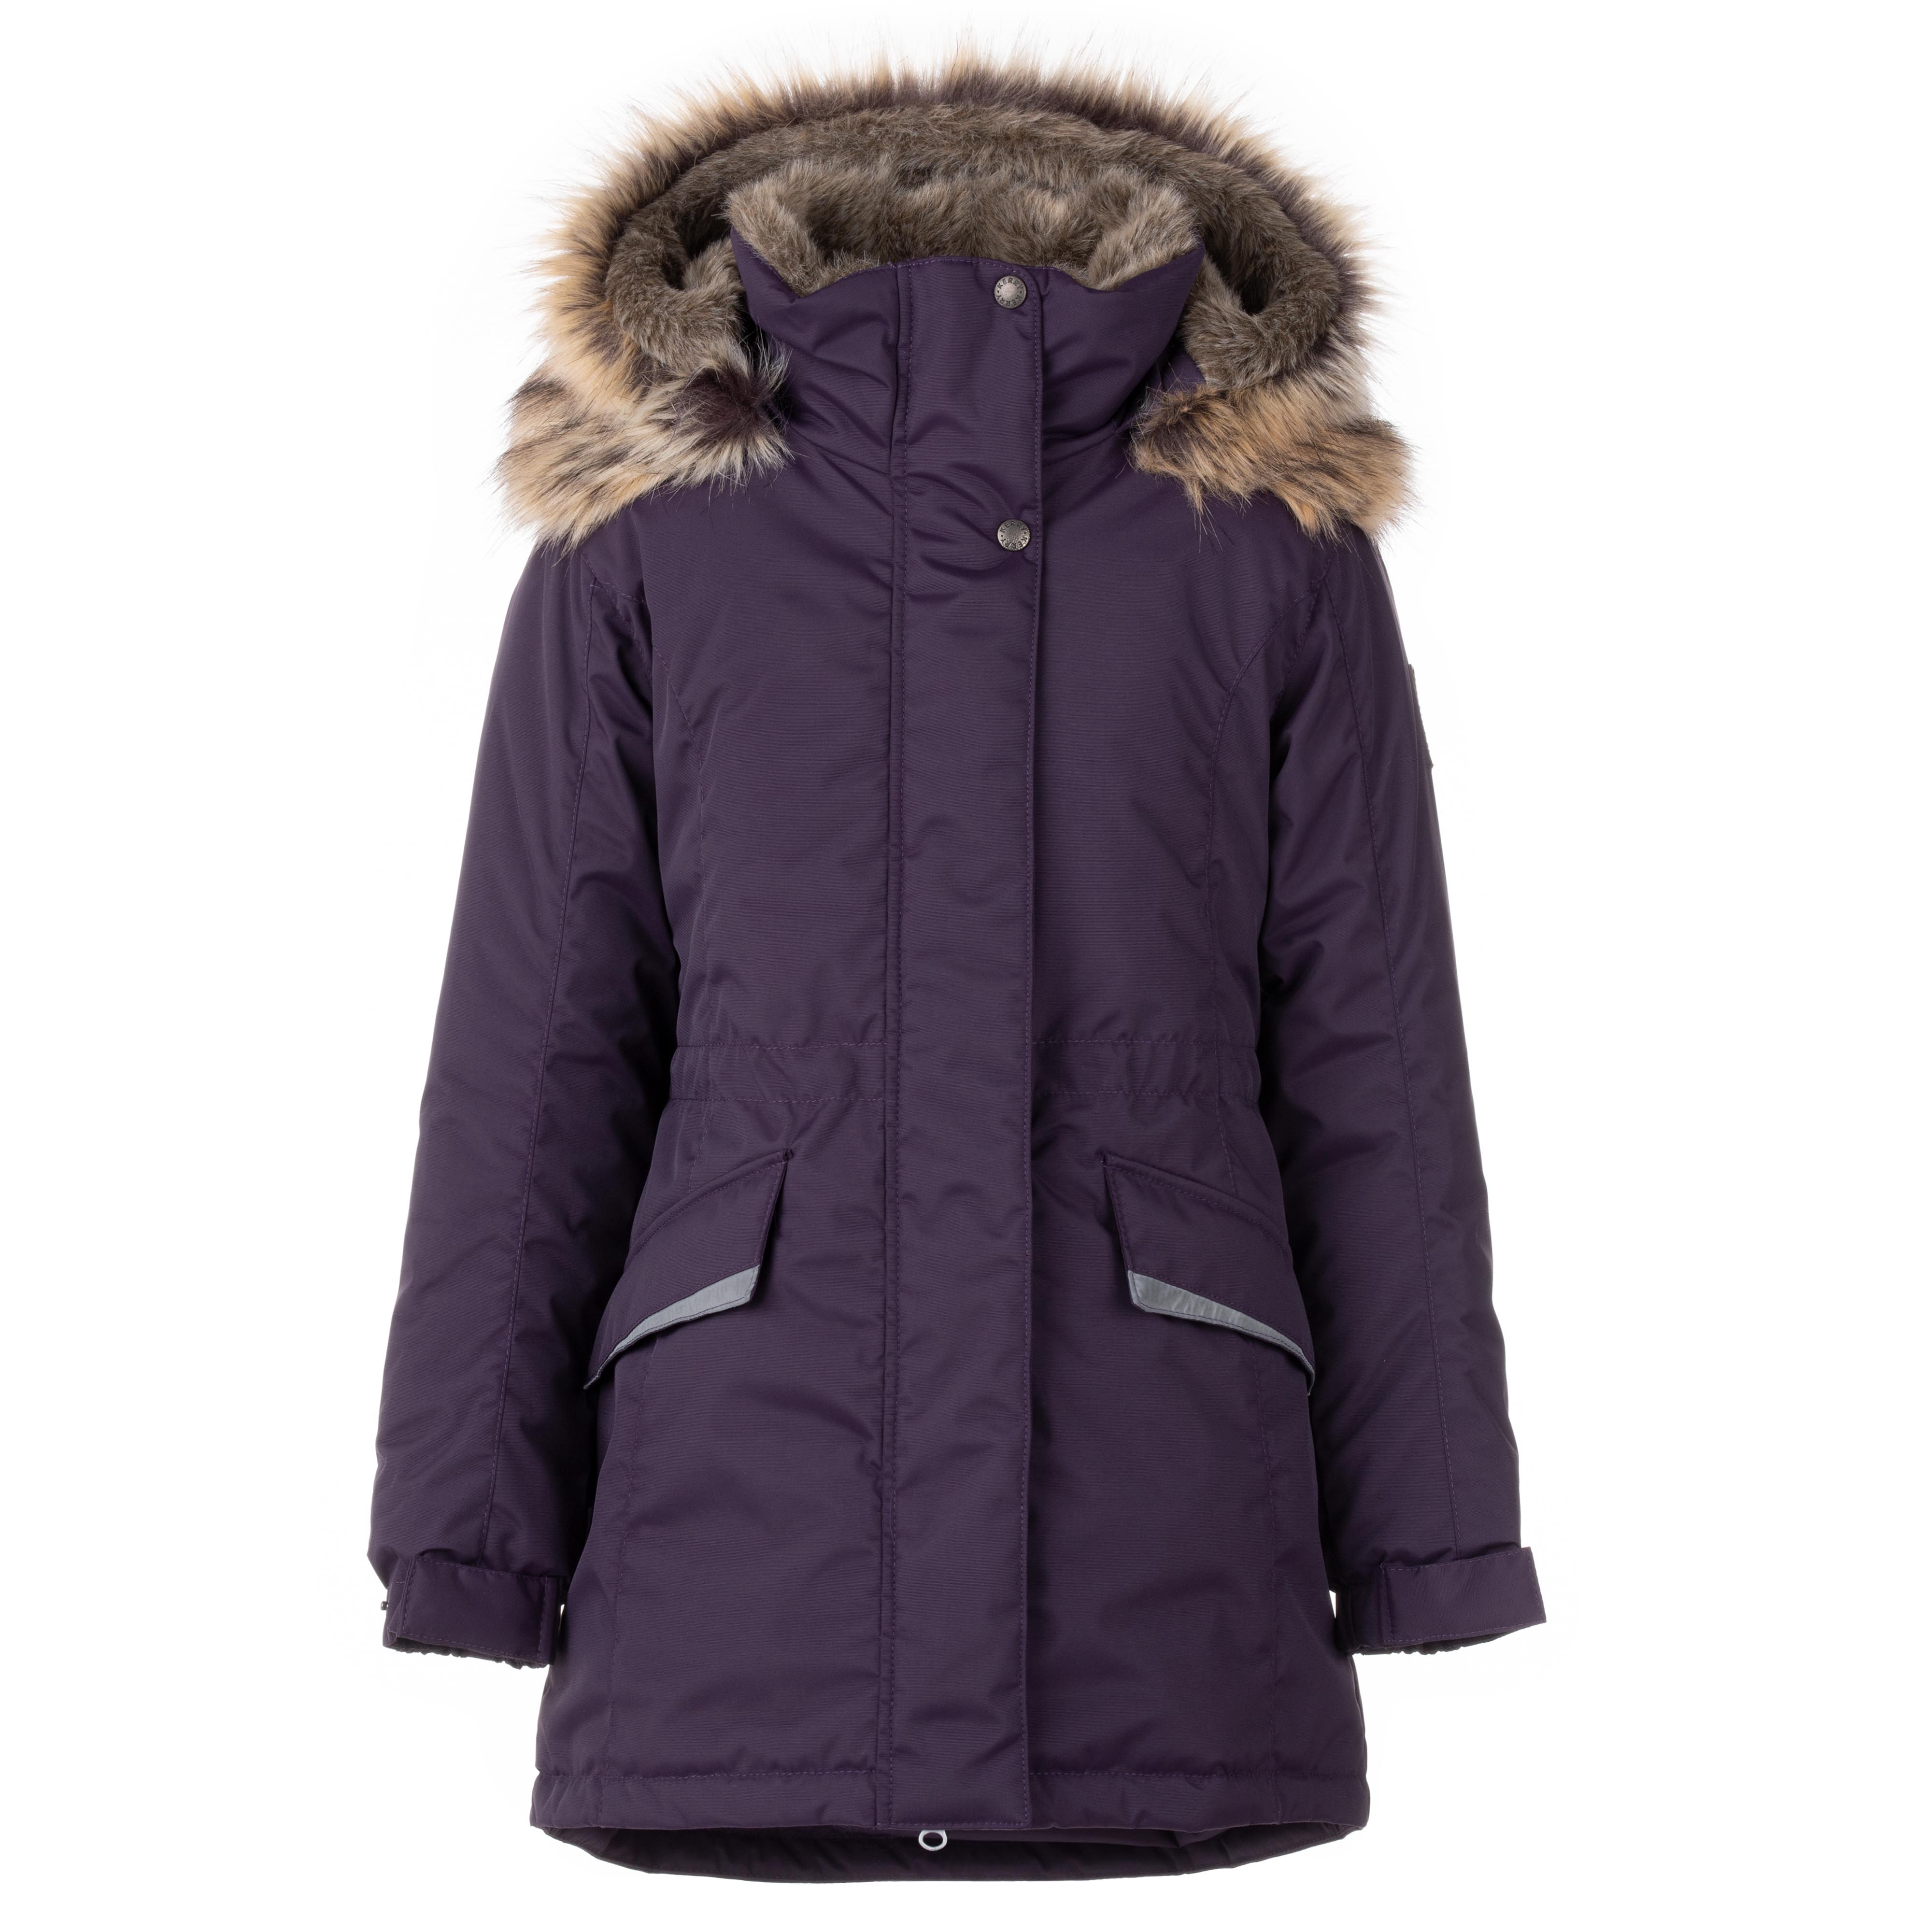 Куртка детская KERRY K23671, фиолетовый, серый, 146 пылесос вертикальный jimmy h8pro беспроводной фиолетовый серый